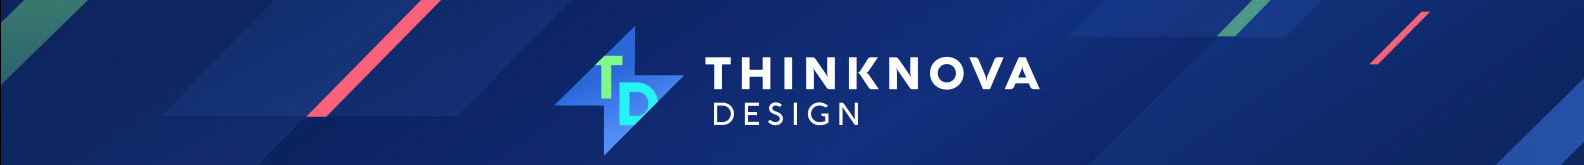 Banner de perfil de Thinknova Design